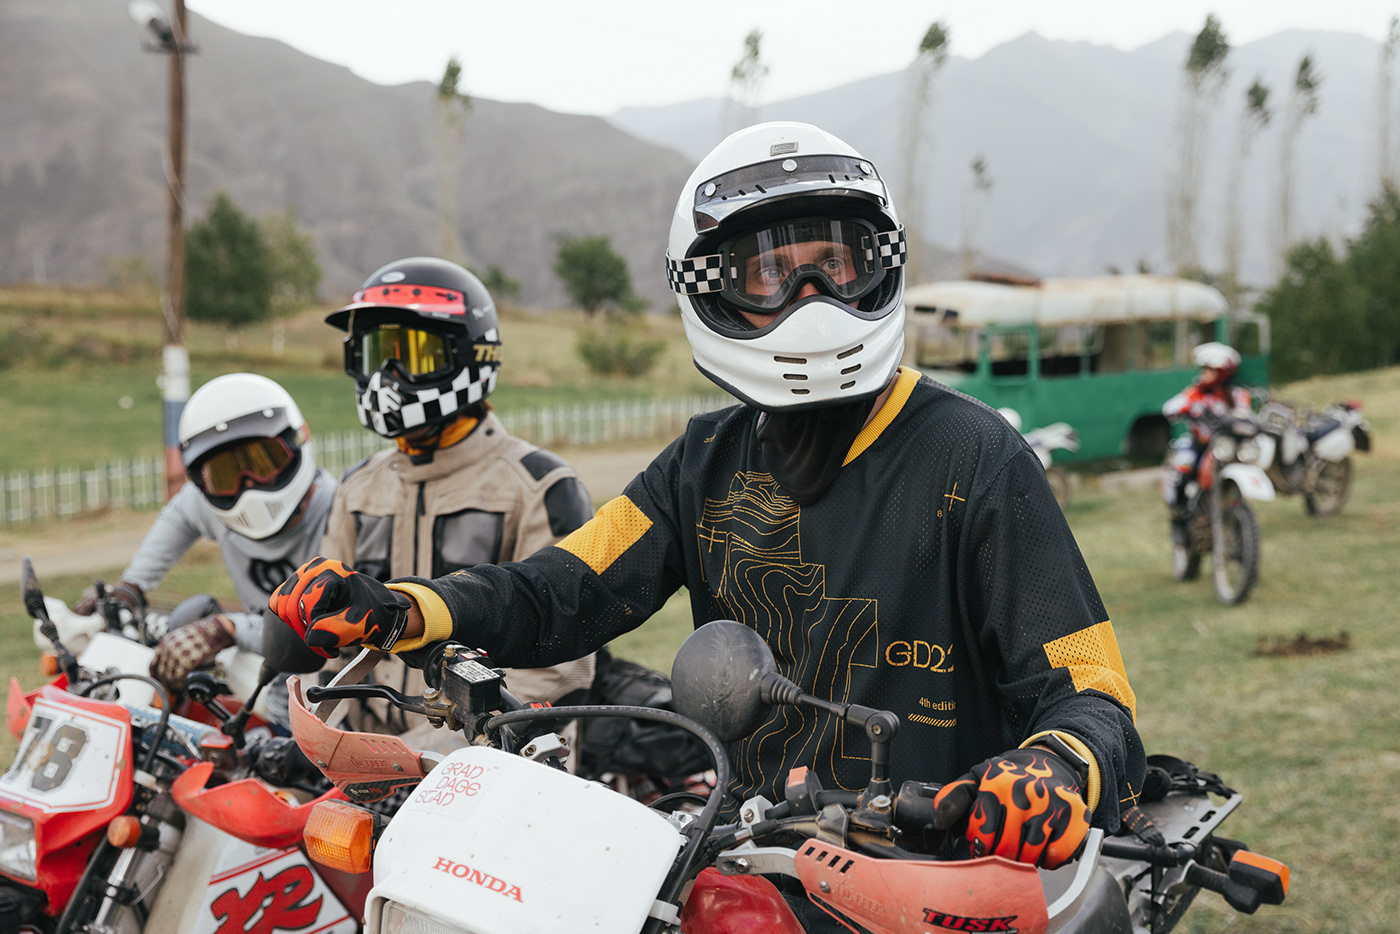 motorcycle motorcycles Travel Outdoor Motorsport Bike motorbike vintage dagestan lifestyle